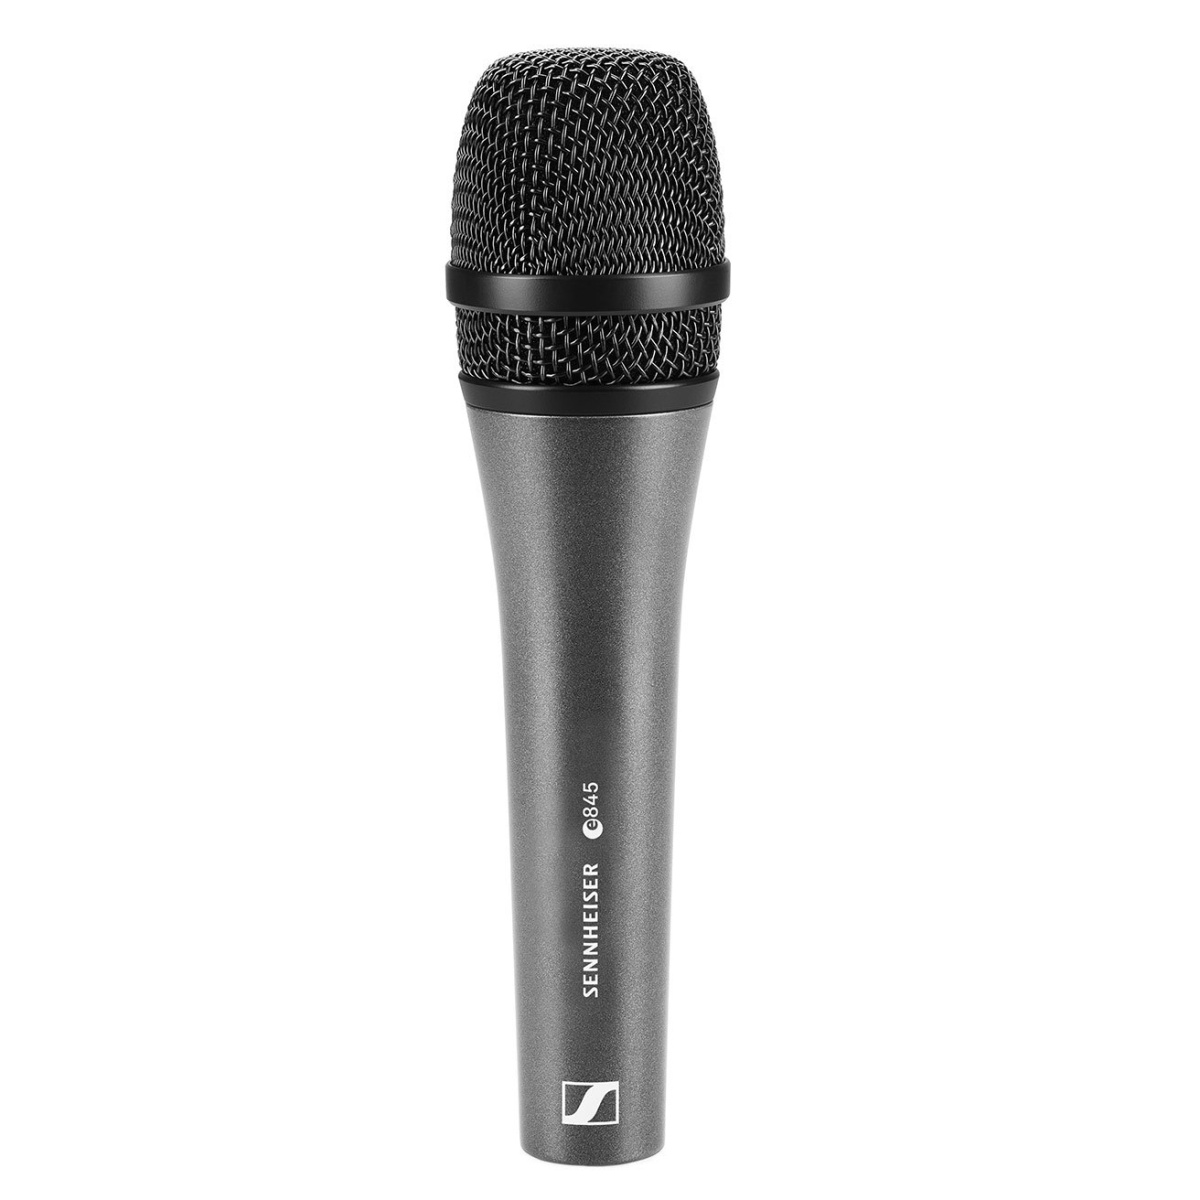 SENNHEISER E 845 - динамический вокальный микрофон, суперкардиоида, 40 - 16000 Гц, 200 Ом купить в prostore.me